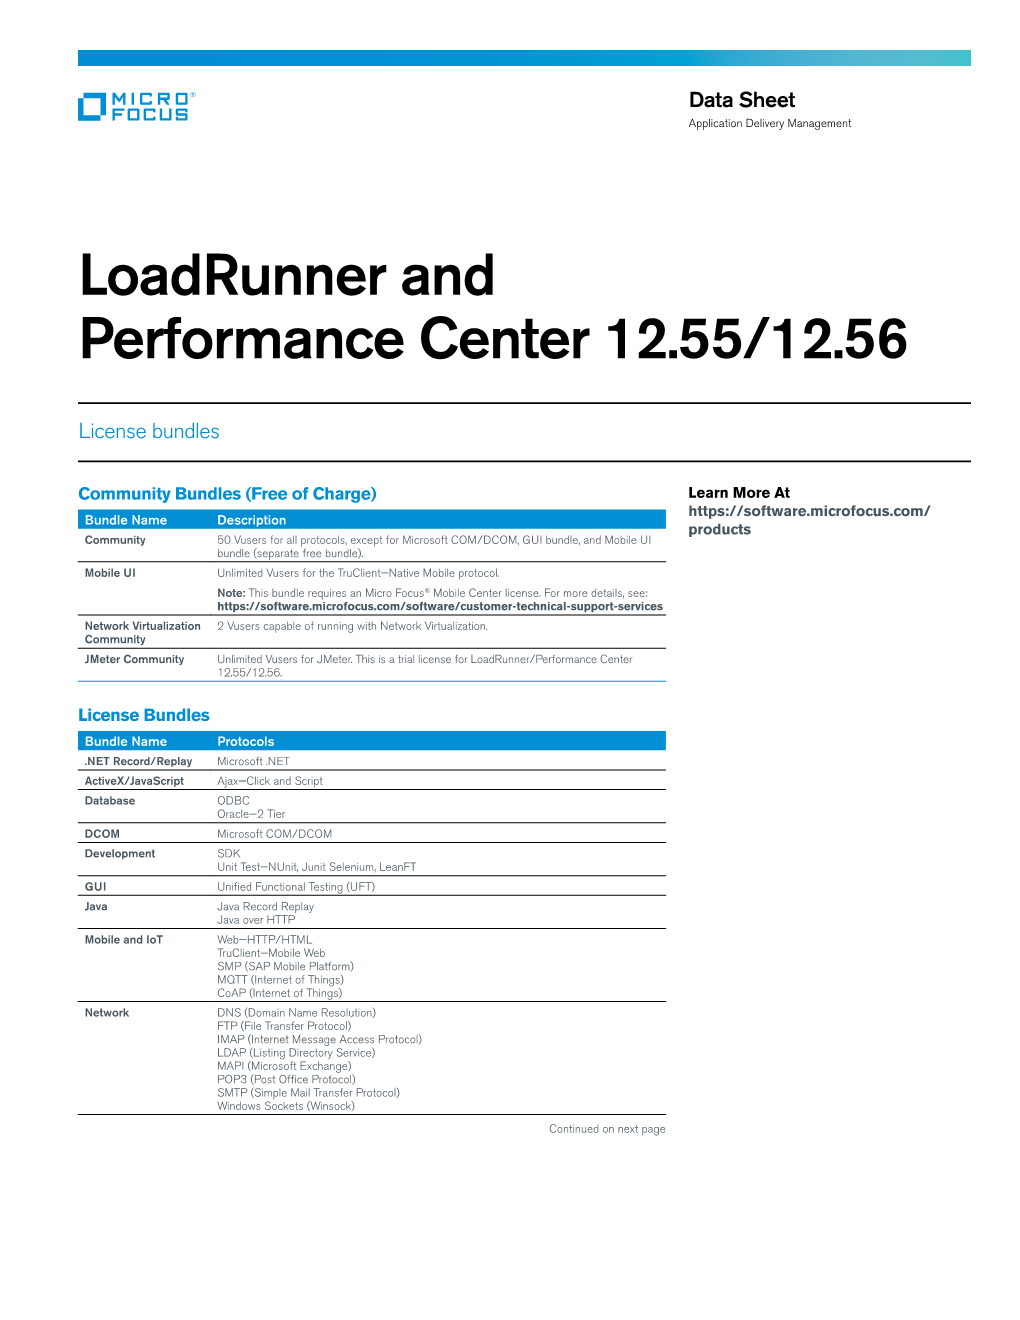 Loadrunner and Performance Center 12.55/12.56